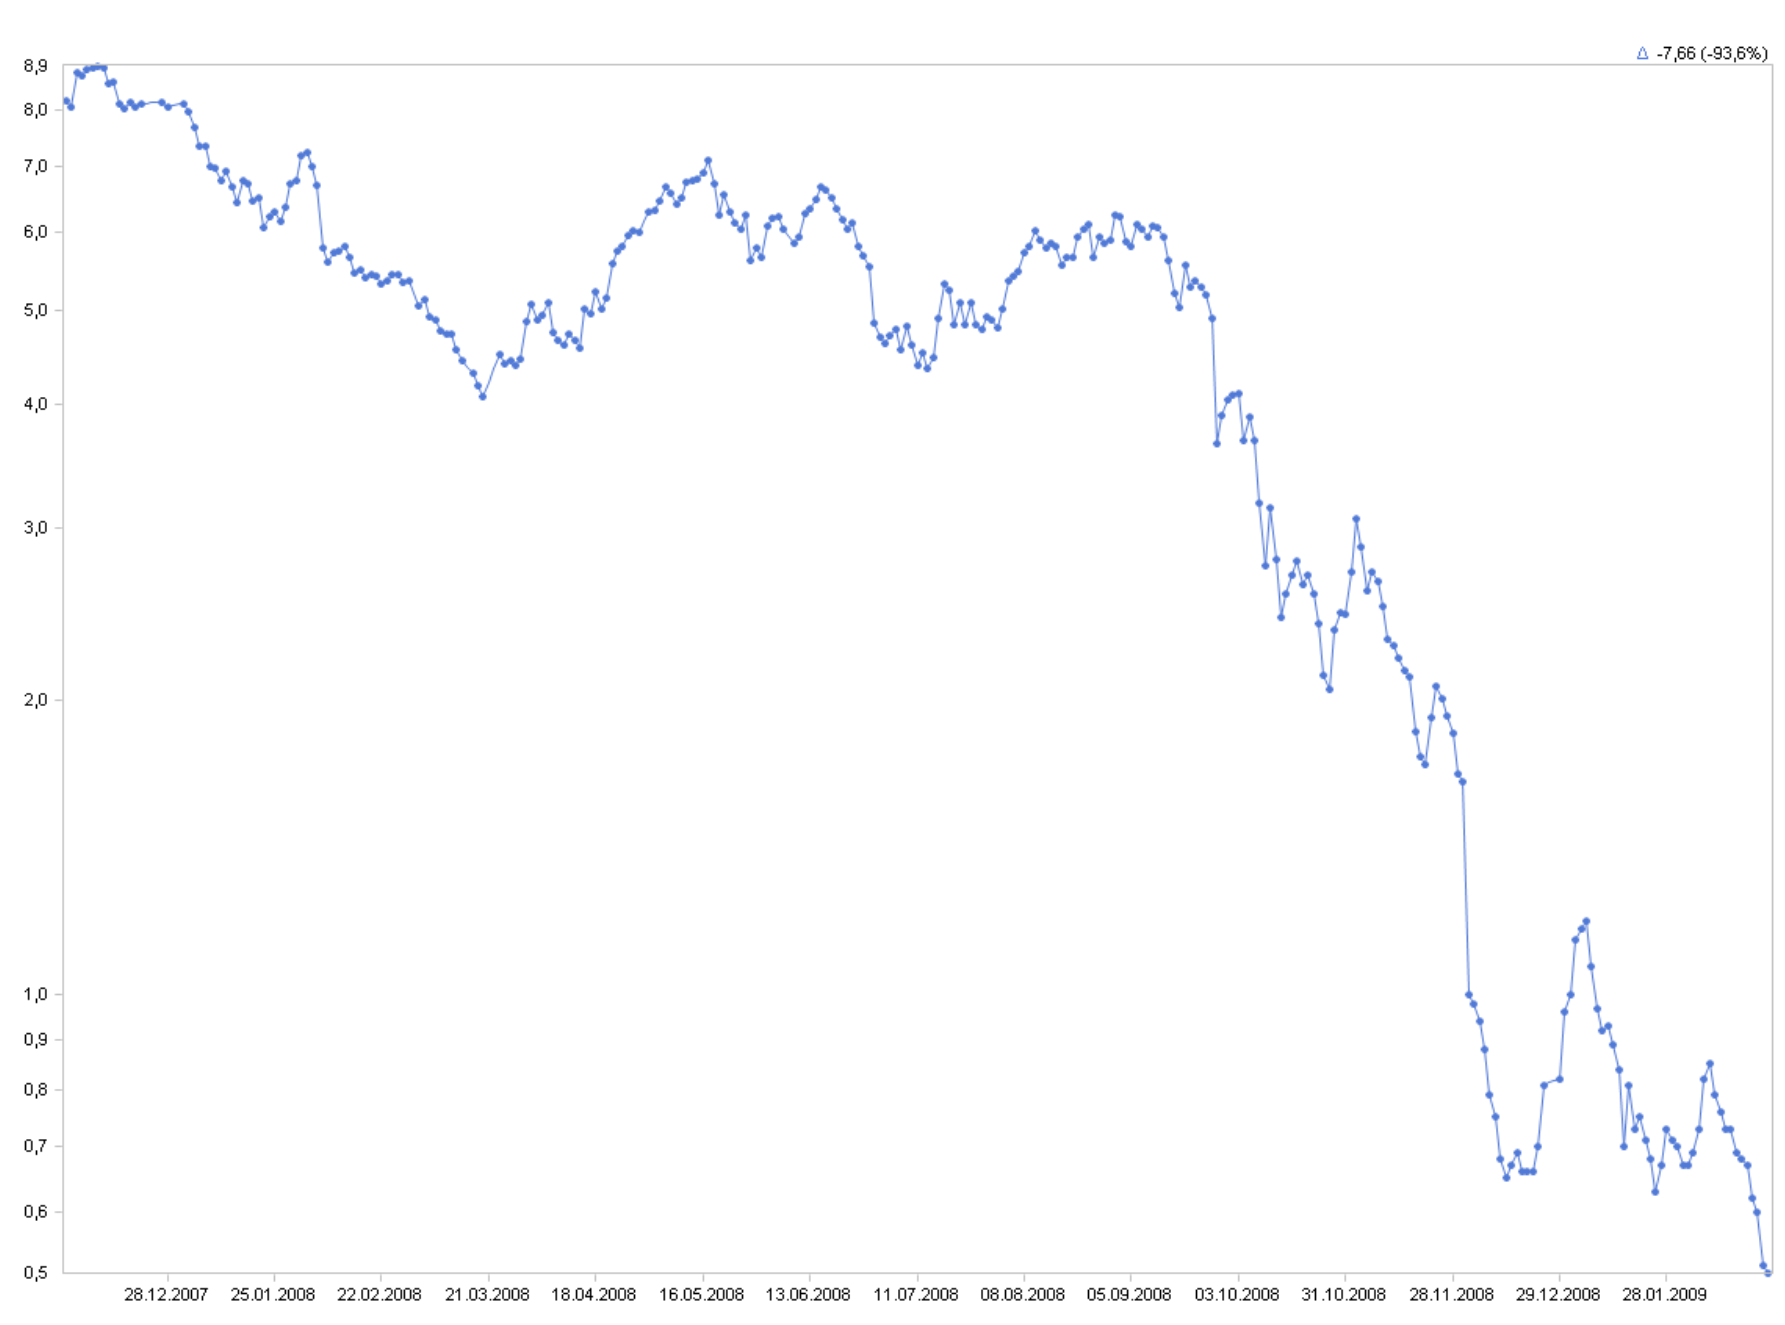 Aktienkurs von Infineon, Dezember 2007 bis Februar 2009, logarithmische Skala